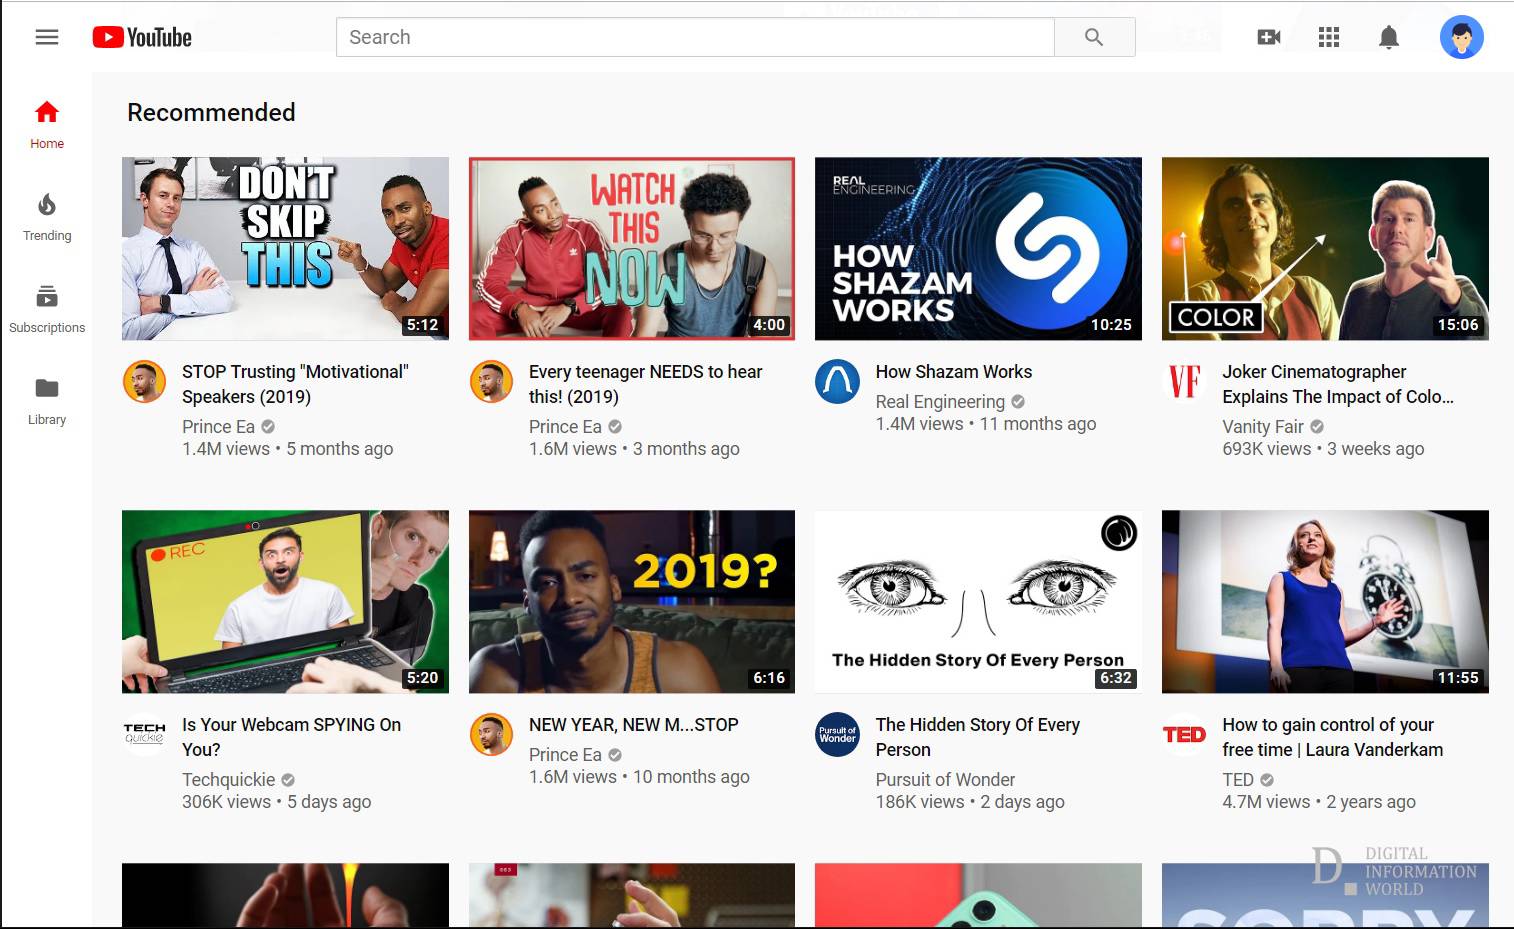 الصفحة الرئيسية لموقع يوتيوب قد تسبب انهيار المشاهدات